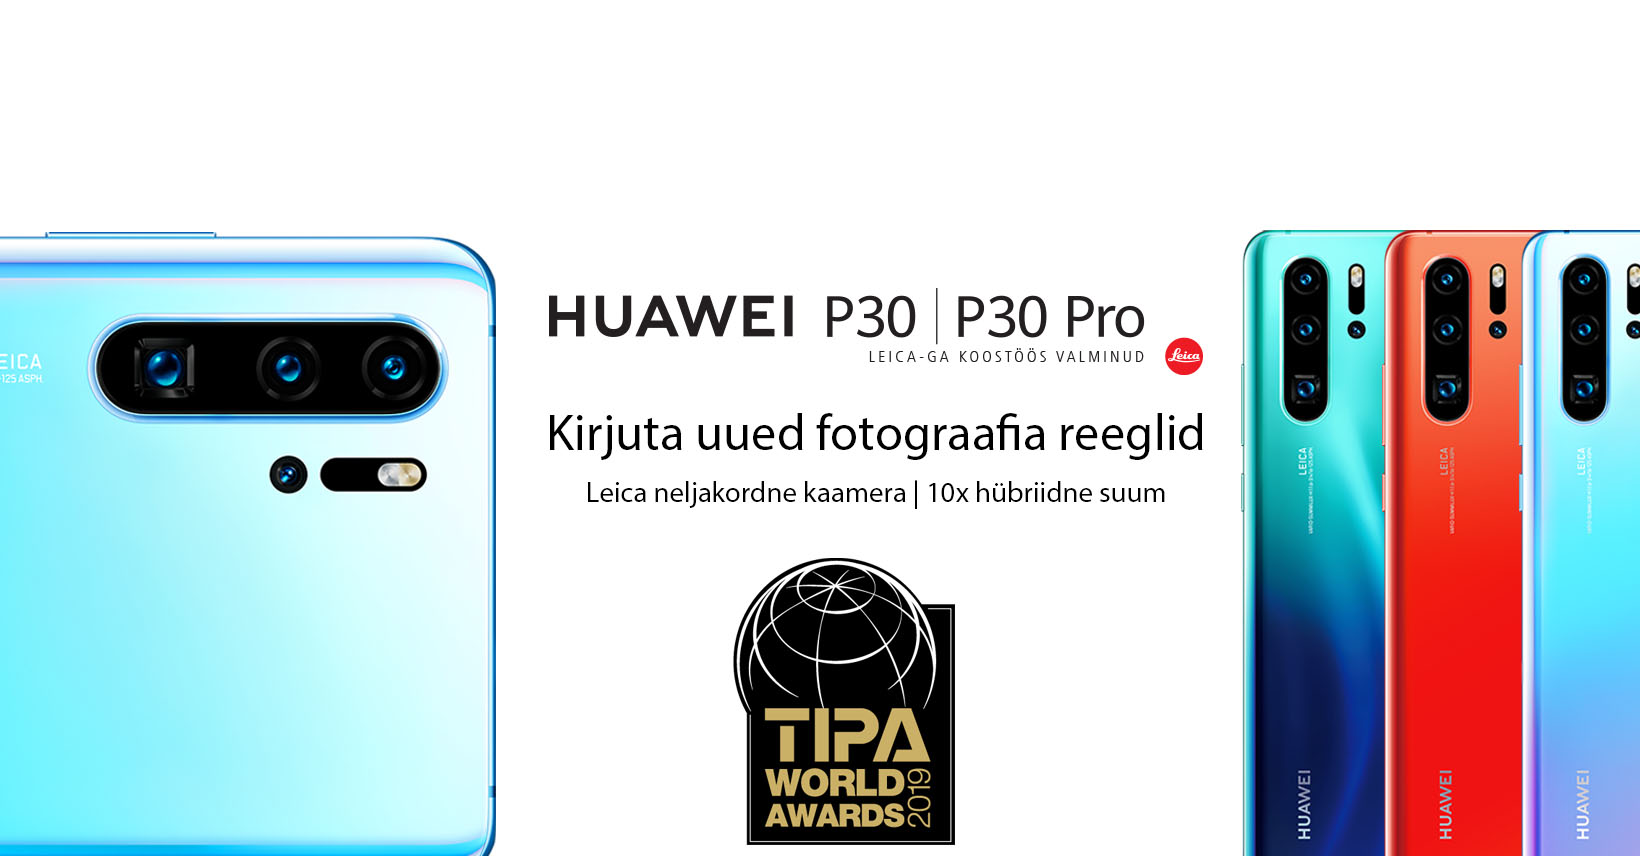 Huawei P30 Pro: смартфон с лучшей камерой в мире по мнению TIPA 2019